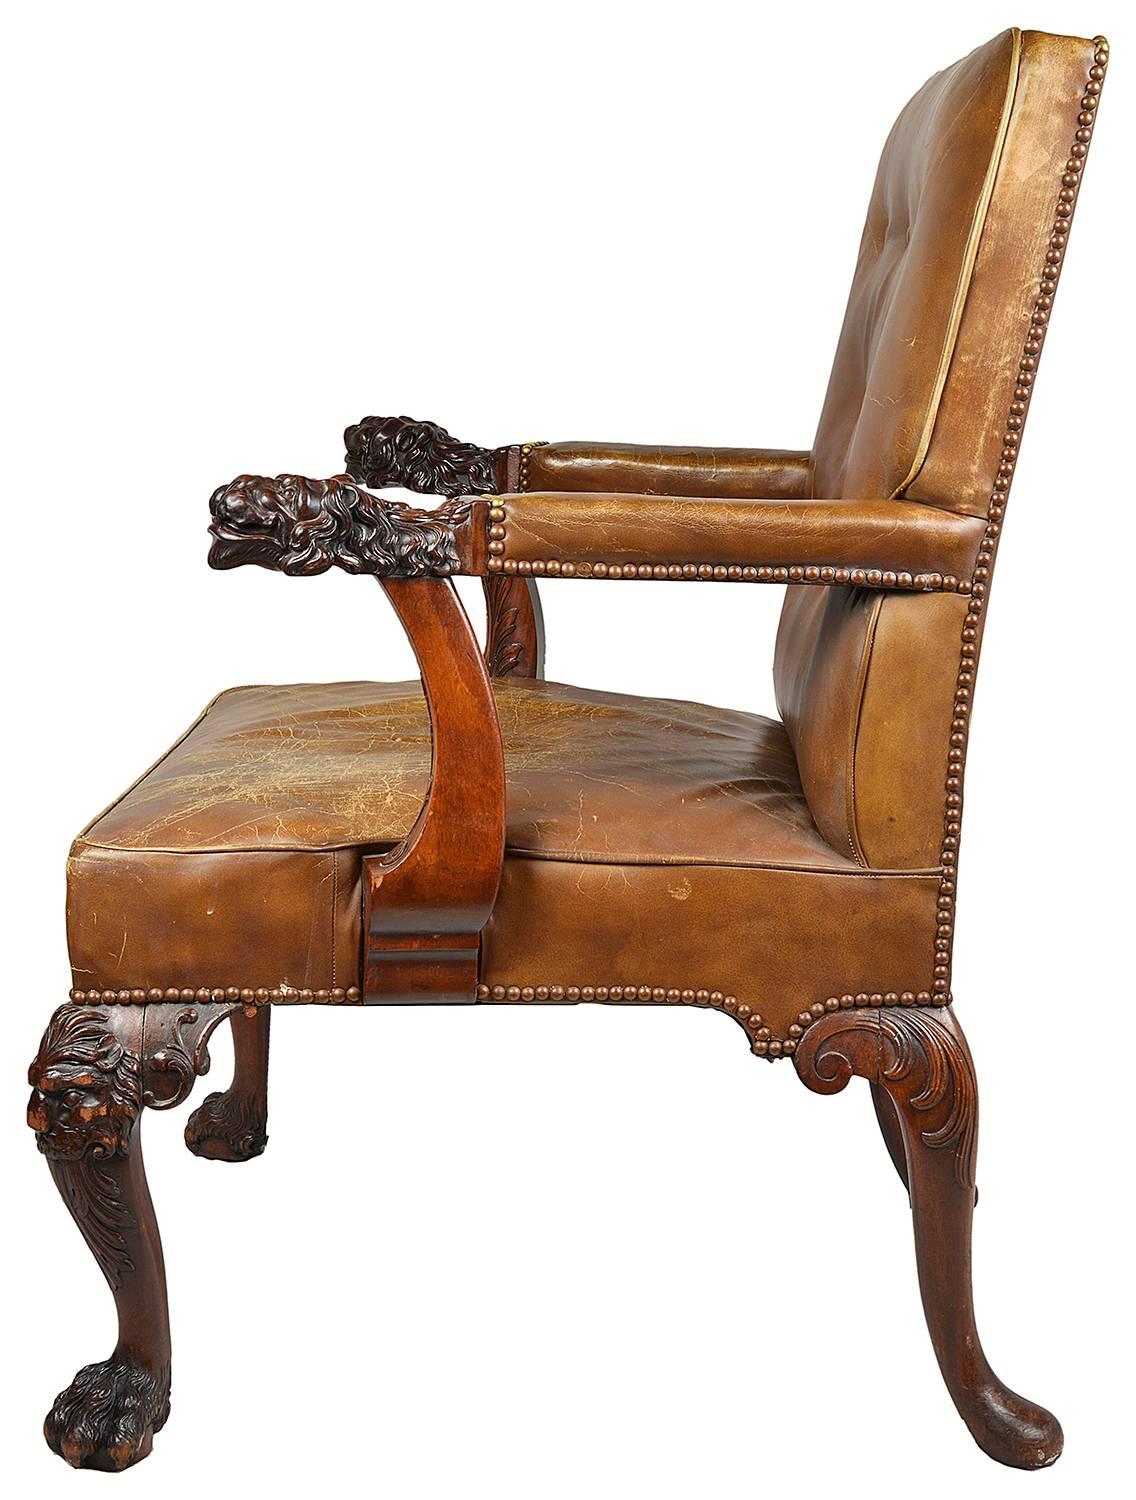 Un bureau / fauteuil en acajou de très bonne qualité de la fin du 19e siècle, d'influence Chippendale. Ils sont dotés d'une magnifique sellerie en cuir délavé. Les accoudoirs sont ornés de masques de lion mythiques sculptés et reposent sur des pieds